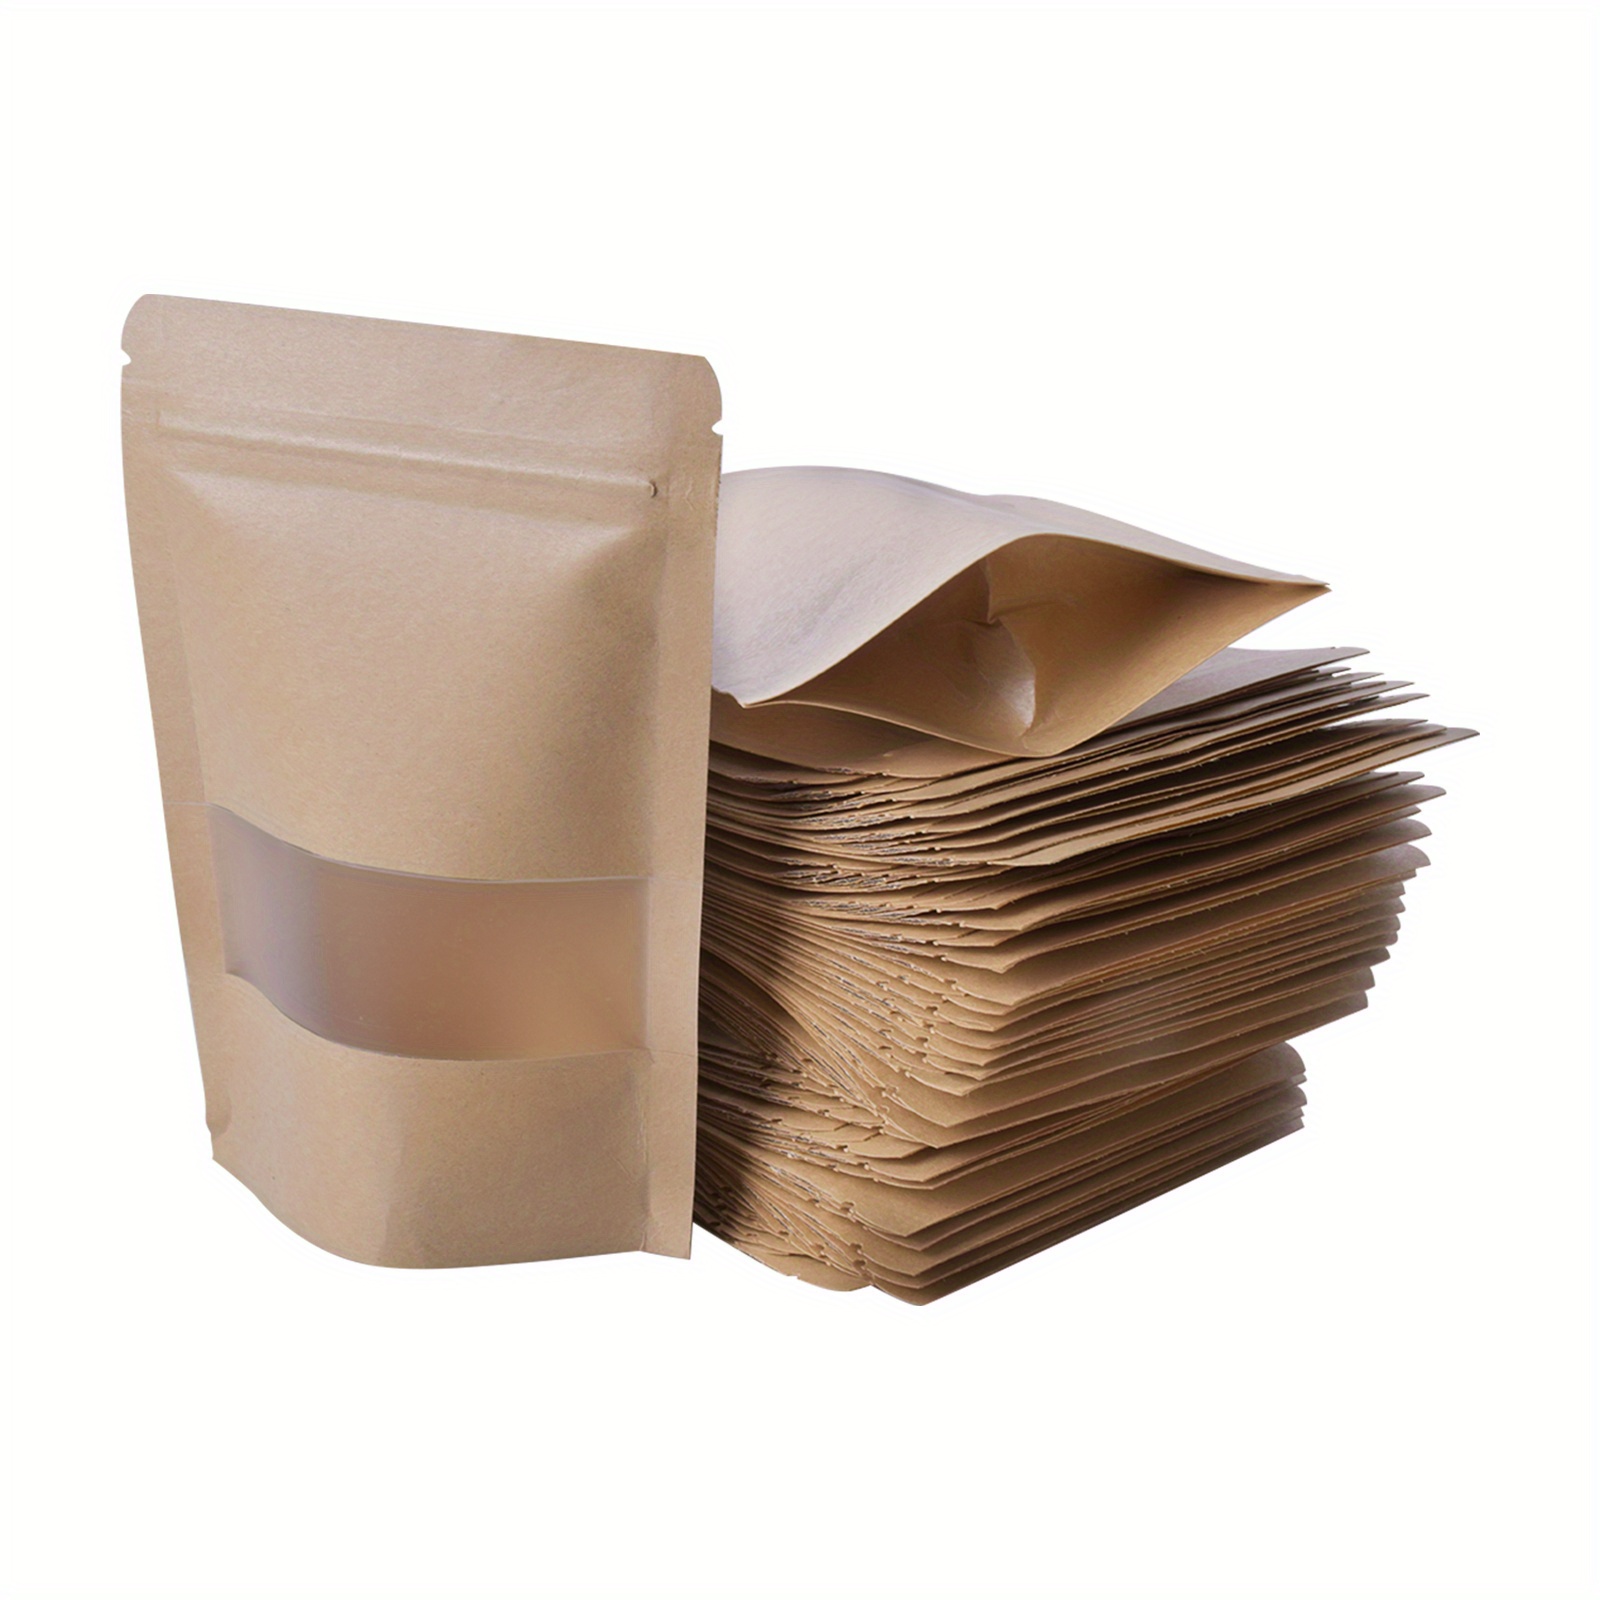 

Lot de 50 sacs de conservation alimentaires réutilisables en papier kraft avec fermeture éclair – Idéal pour l'emballage de fruits secs, haricots, thé, épices, bonbons et biscuits.